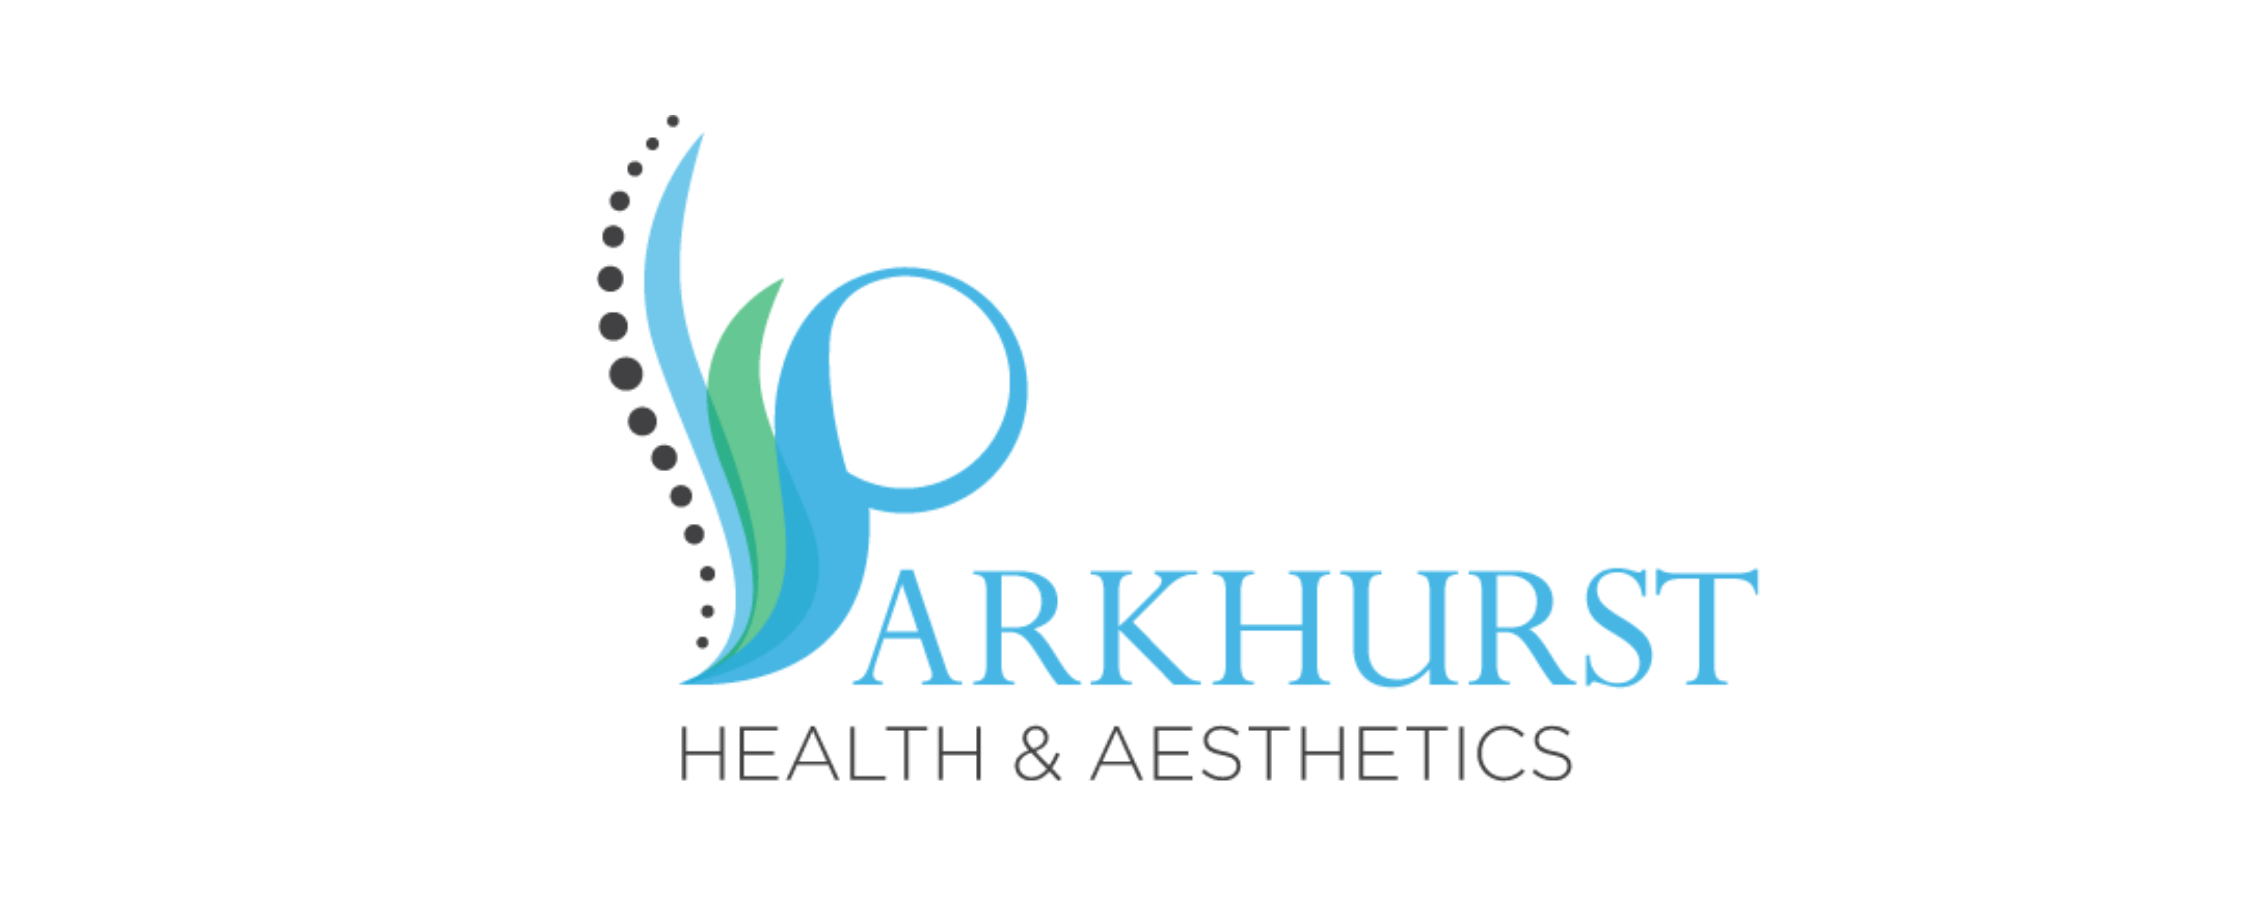 Parkhurst Health & Aesthetics